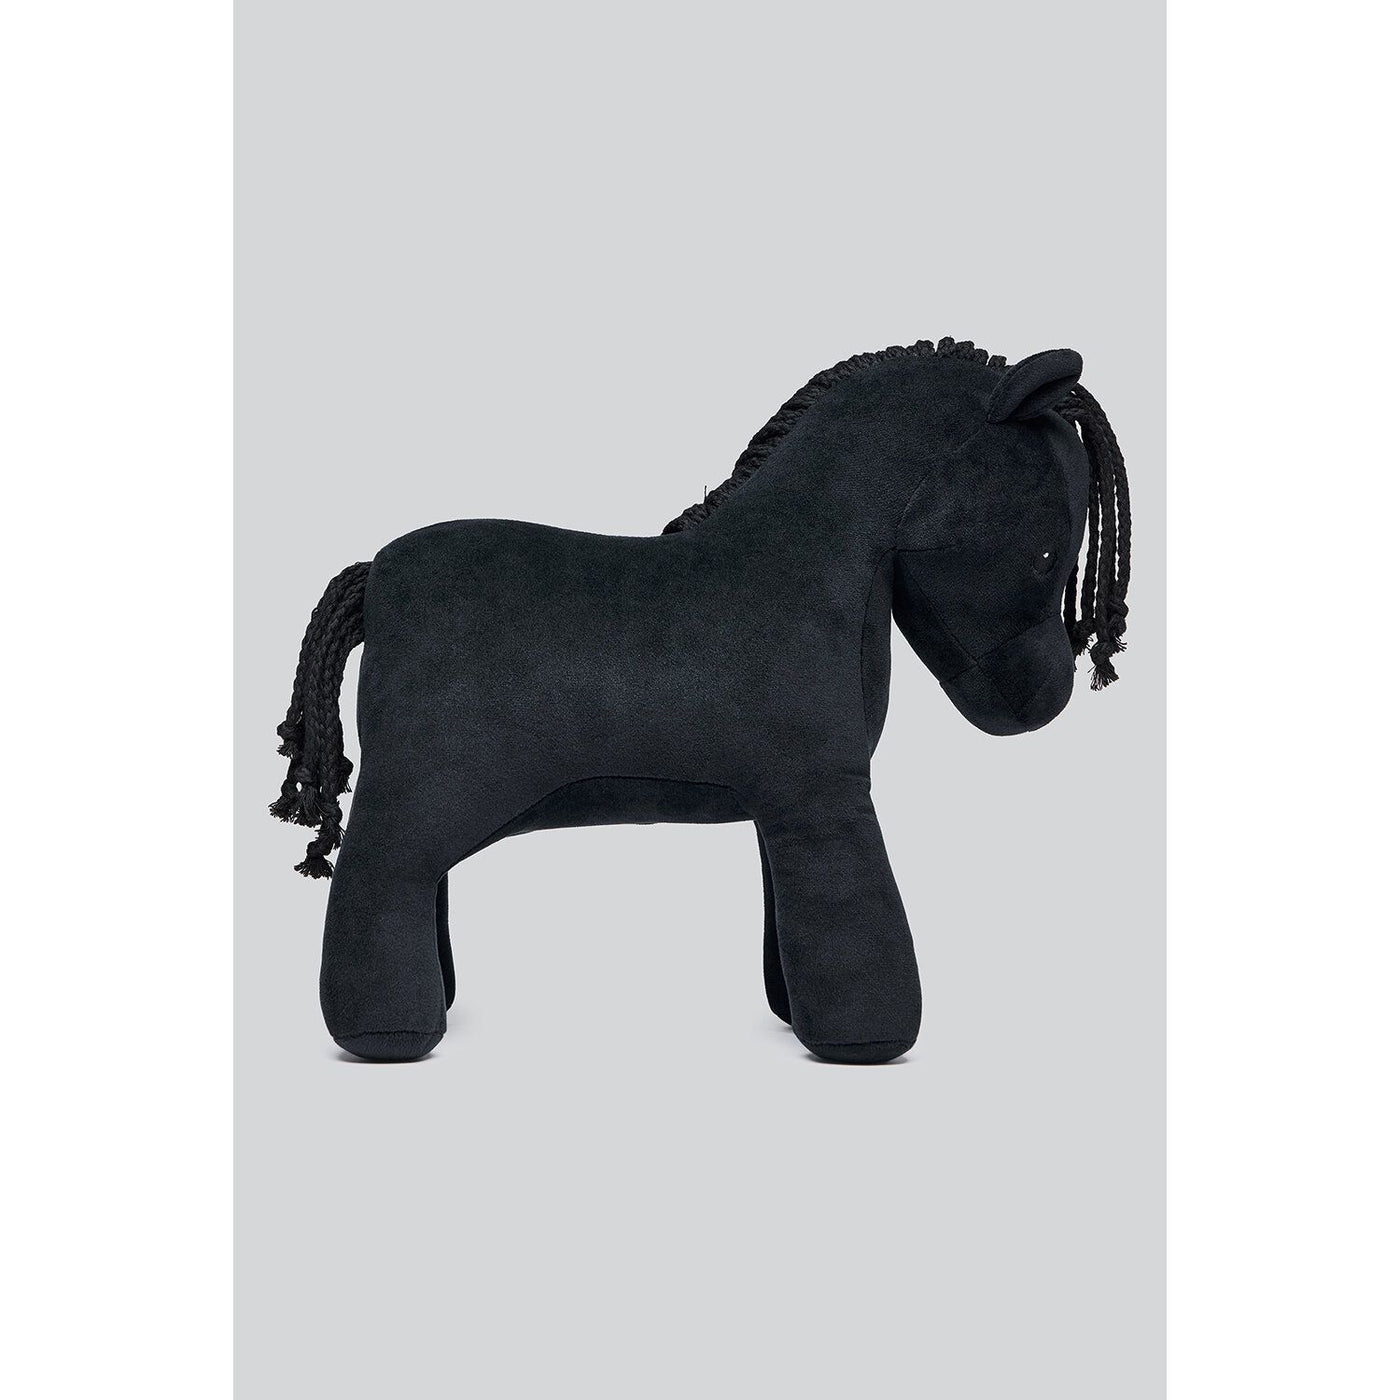 CT, Cavalleria Toskana, legetøj til heste, heste bamse, relax horse toy,